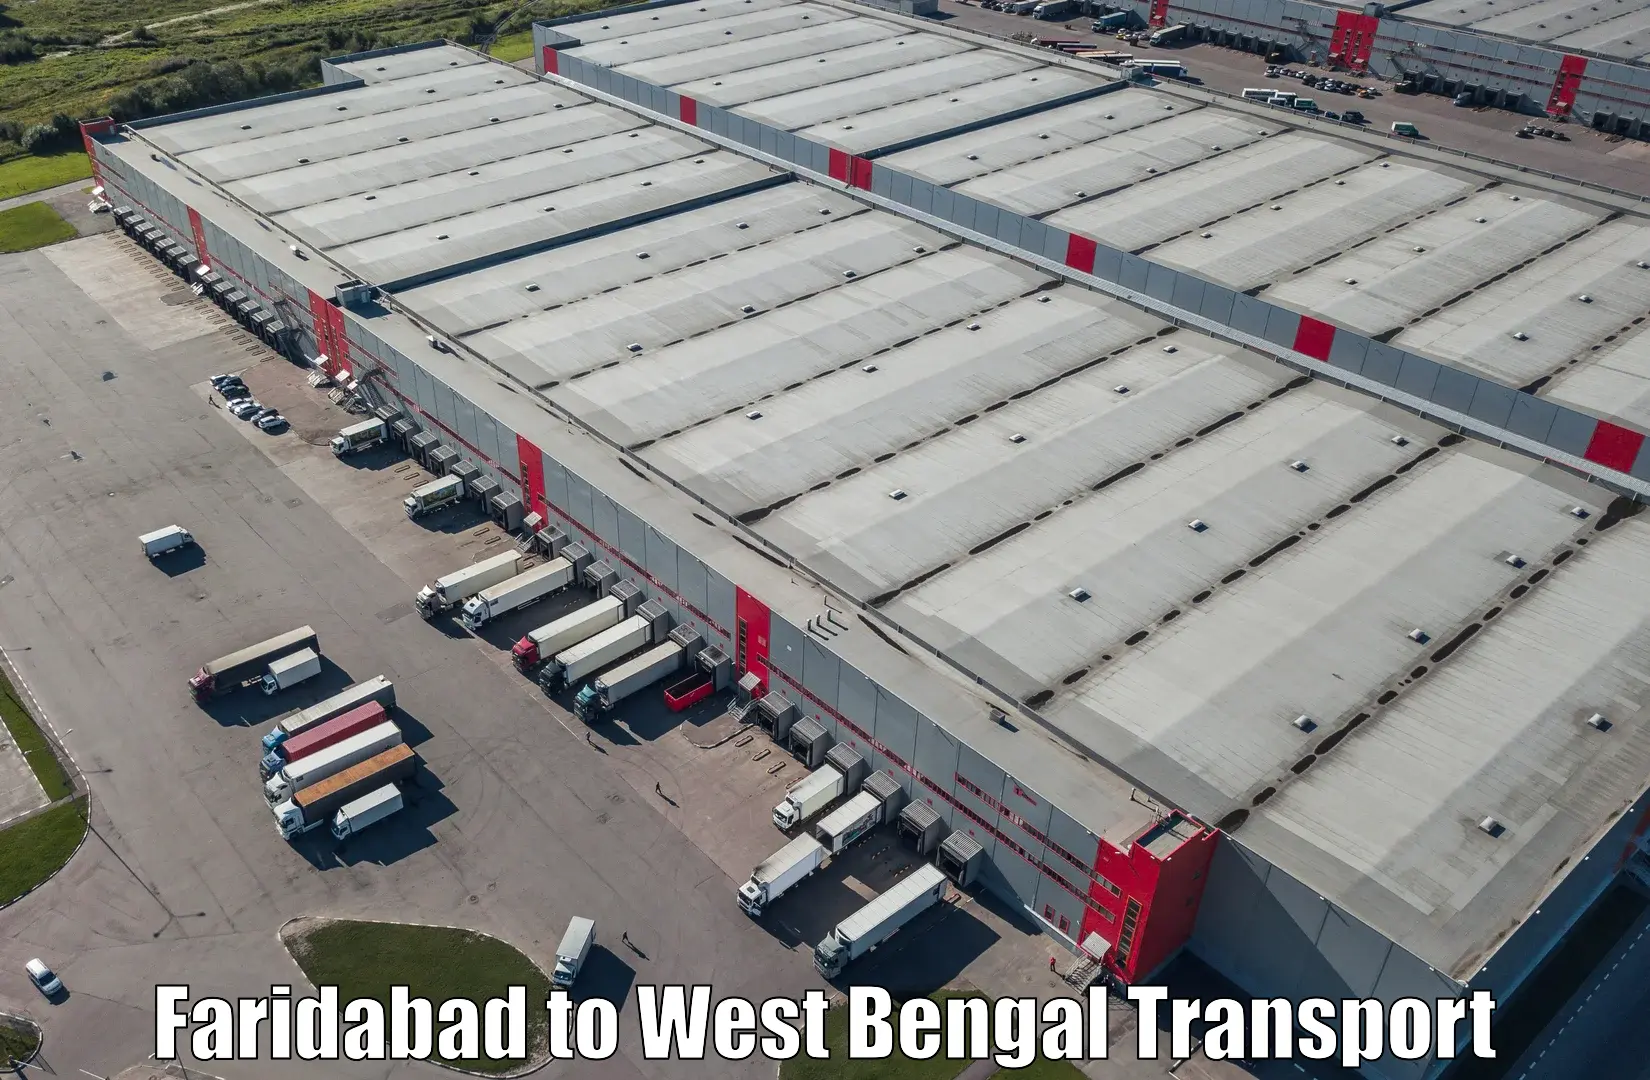 Commercial transport service Faridabad to Badkulla